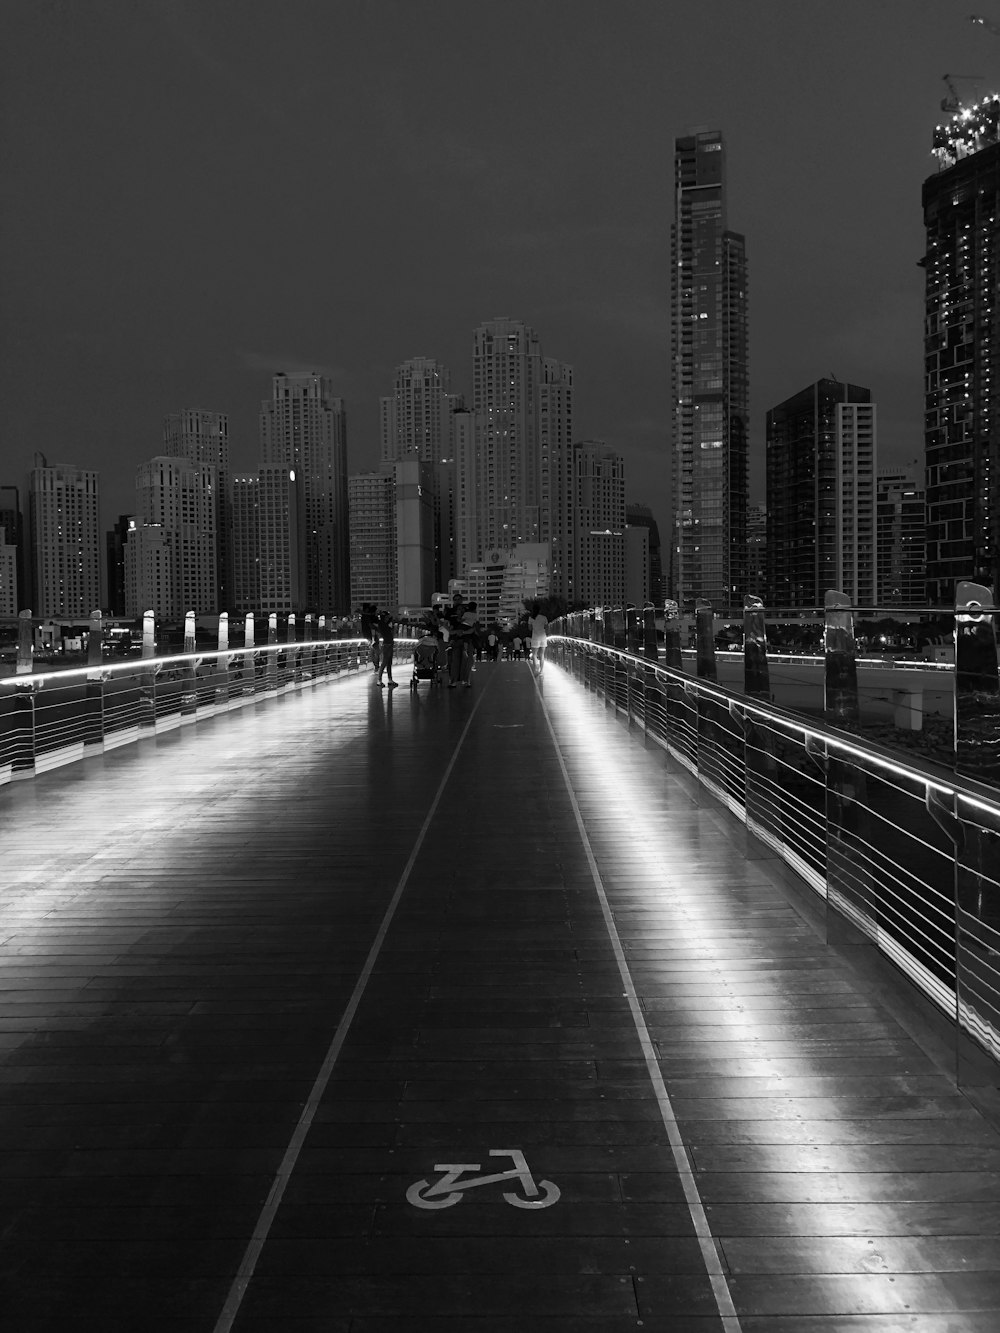 Foto in scala di grigi del ponte che attraversa l'edificio della città